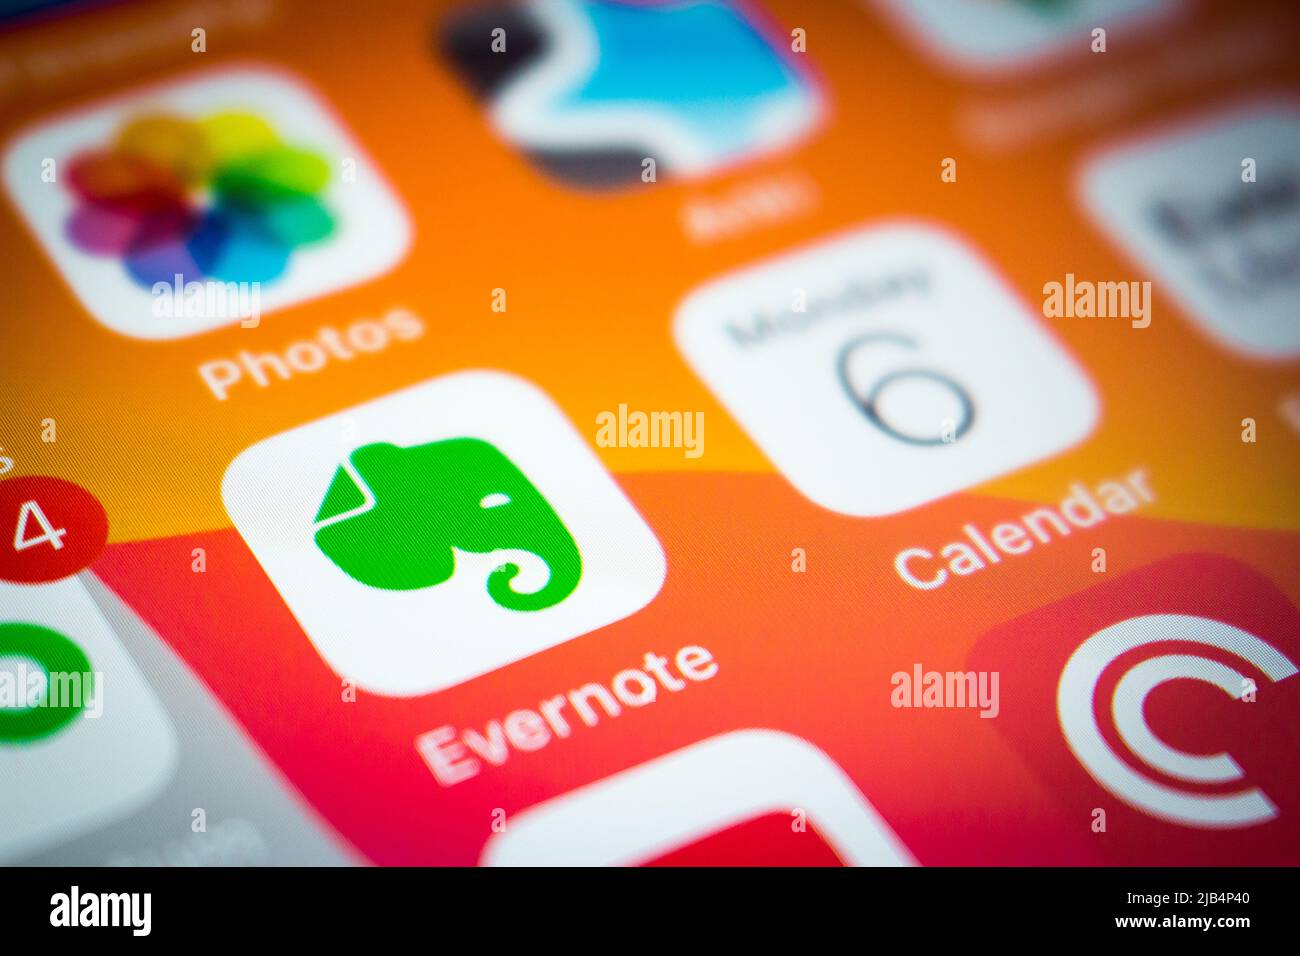 Kumamoto, Japon - avril 5 2020 : application d'Evernote sur iPhone. Evernote est conçu pour la prise de notes, l'organisation, la gestion des tâches et l'archivage. Banque D'Images